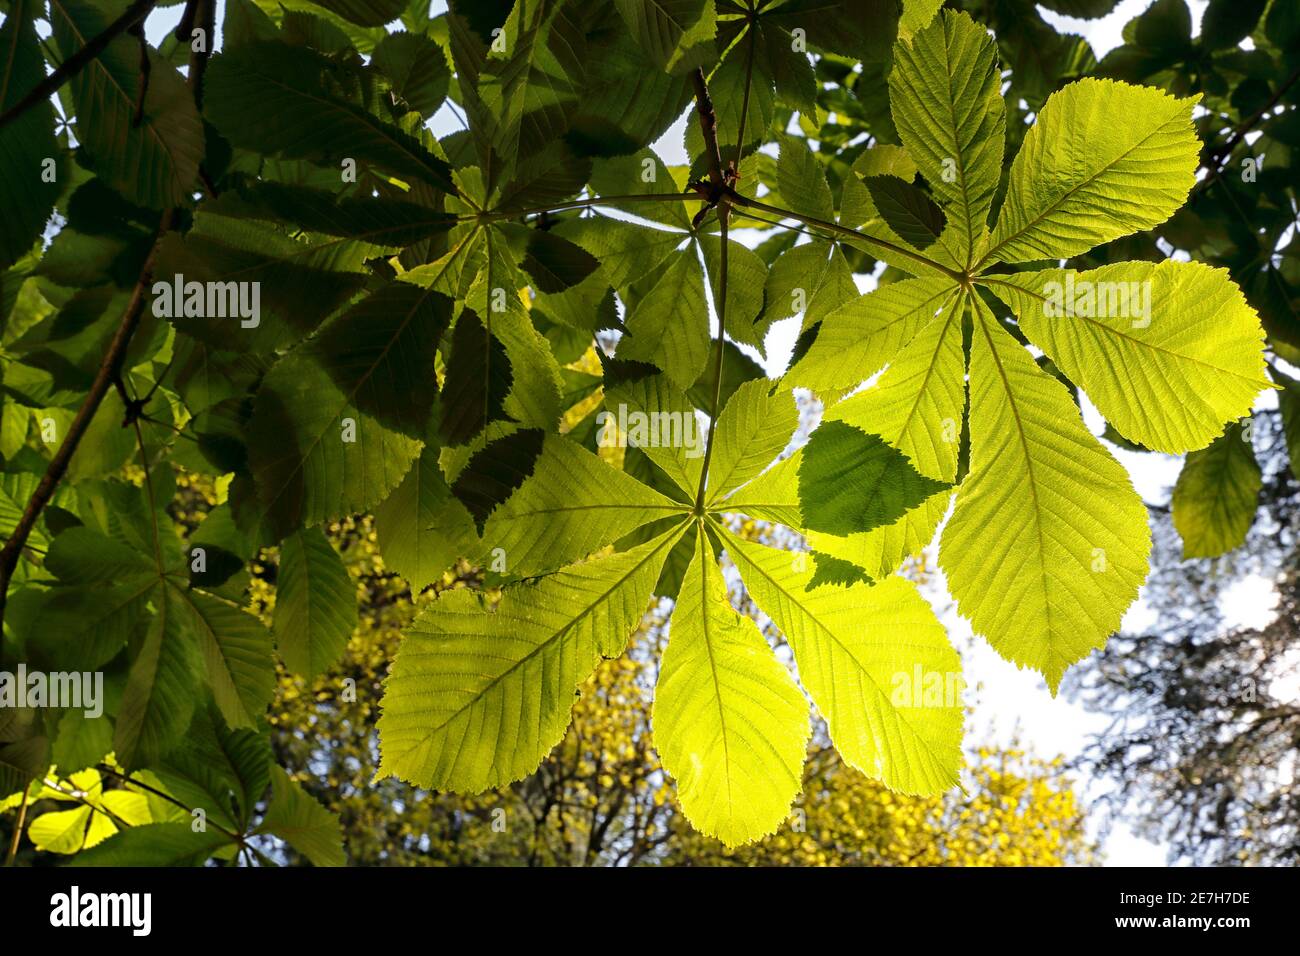 Castagno di cavallo (Aesculus hippocastanum) foglie alla luce del sole, castagno di cavallo è nativo della penisola balcanica e introdotto nel Regno Unito attraverso la Turchia. Foto Stock